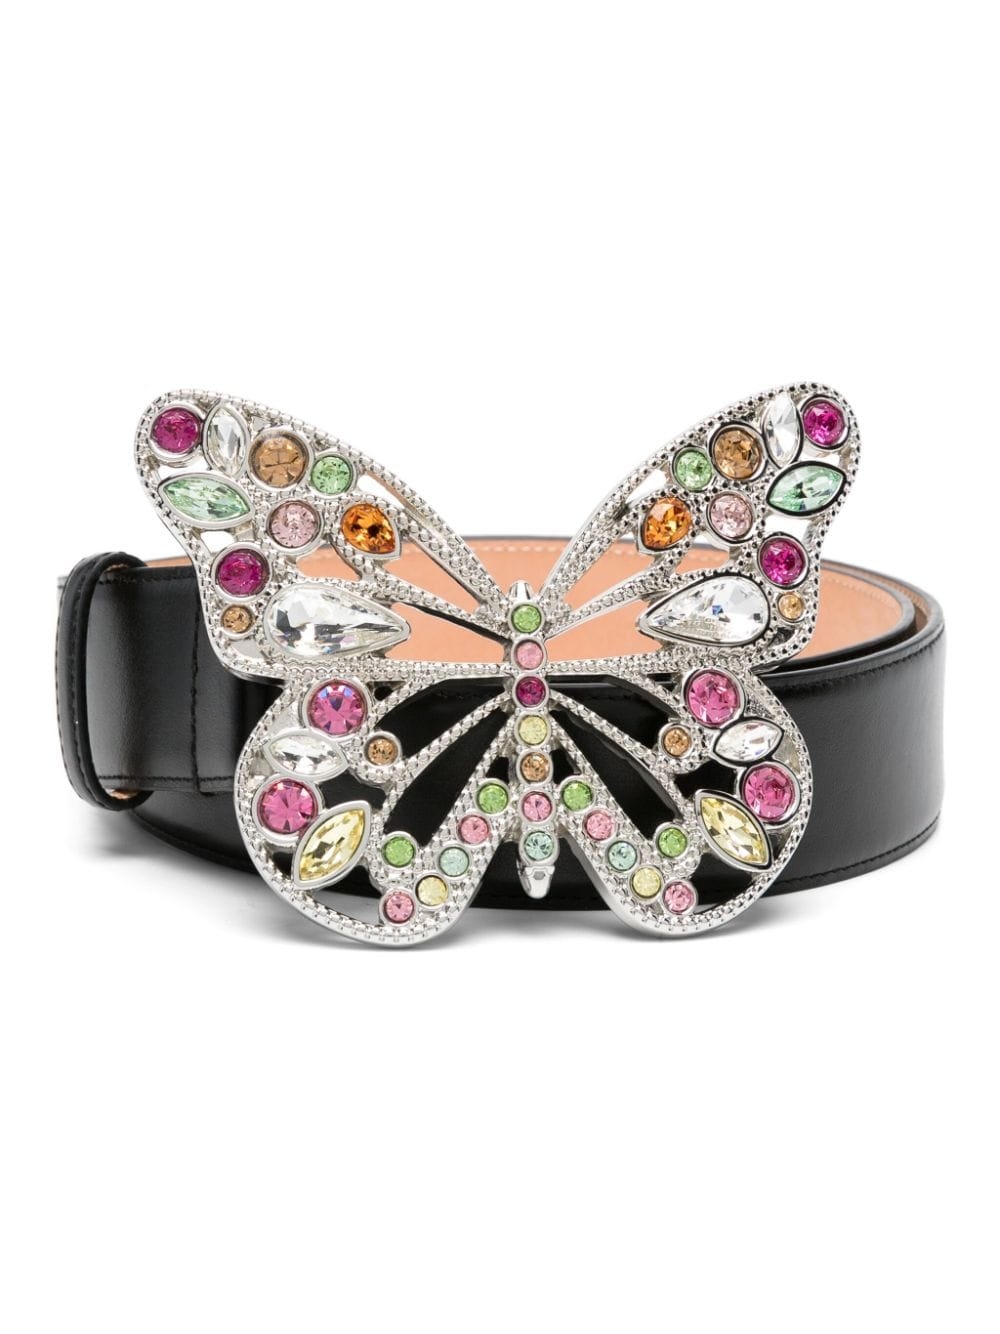 butterfly-buckle leather belt - 1